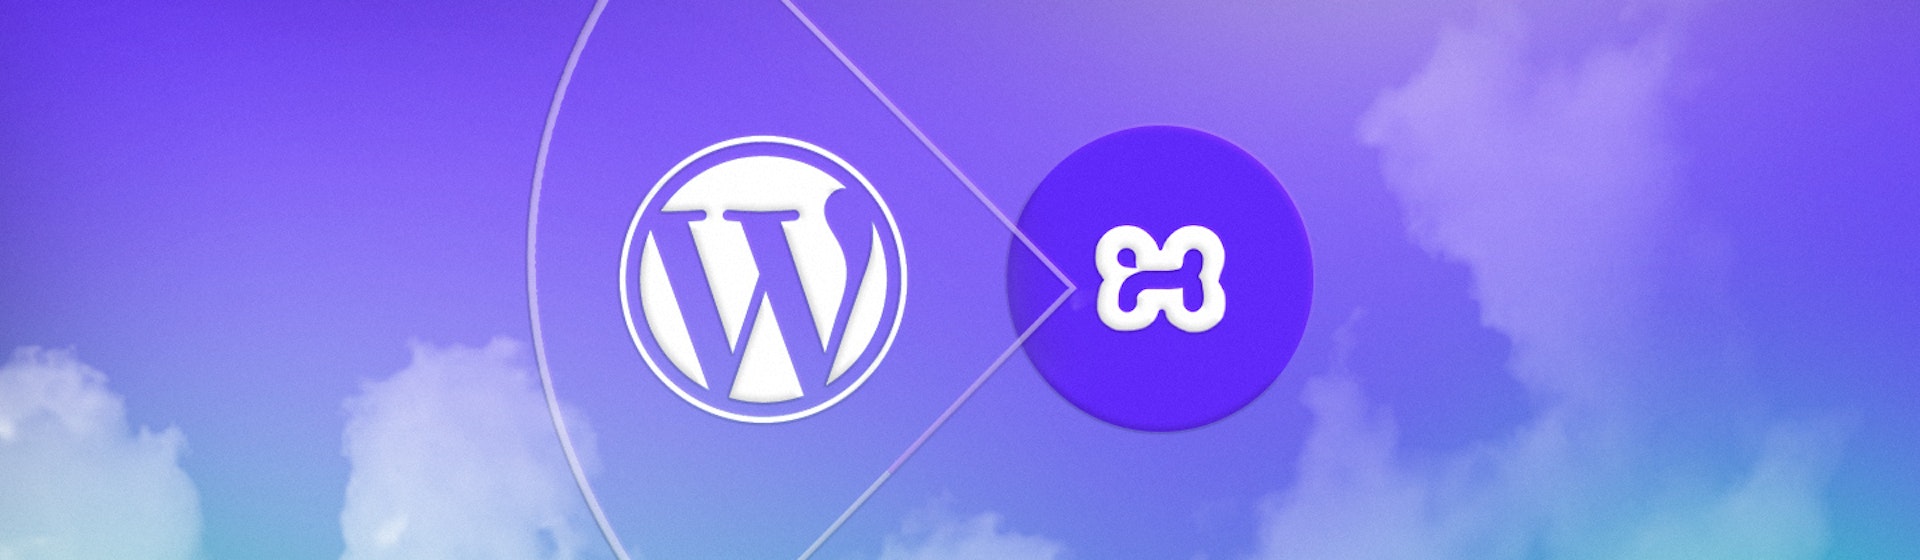 ¿Cómo instalar WordPress en Xampp? Guía para principiantes en desarrollo web